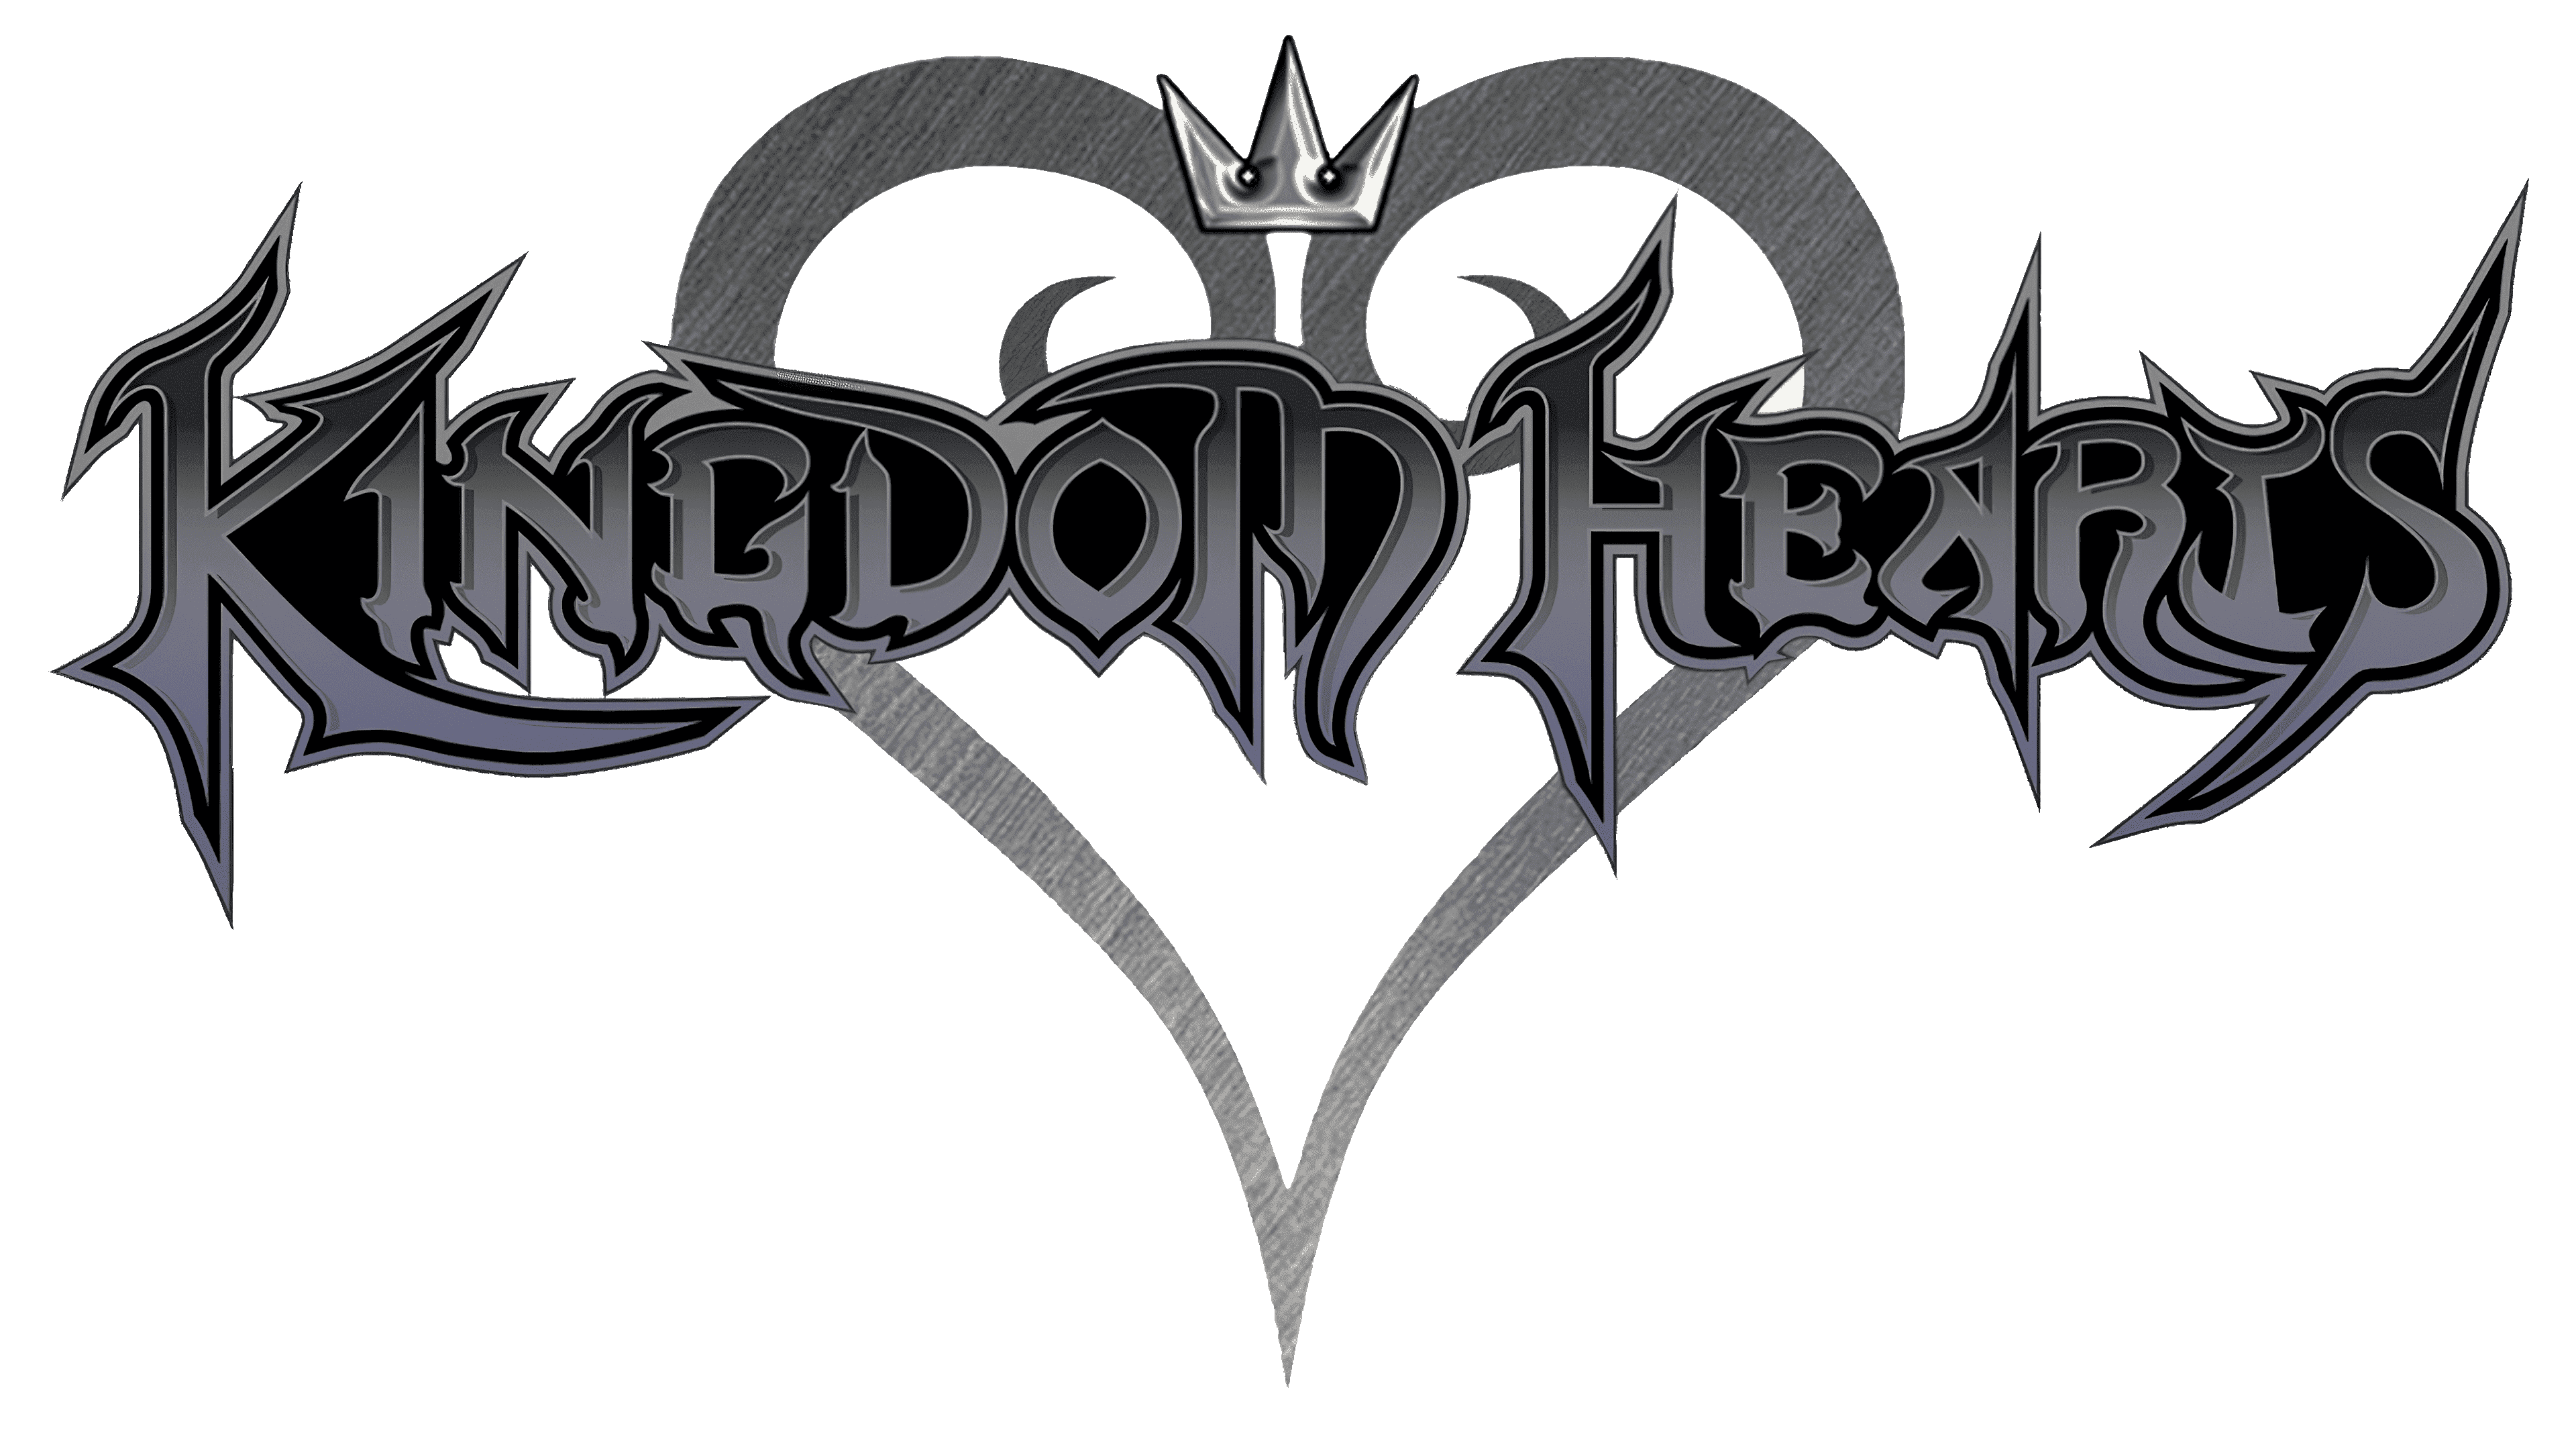 Kingdom Hearts 3 Logo